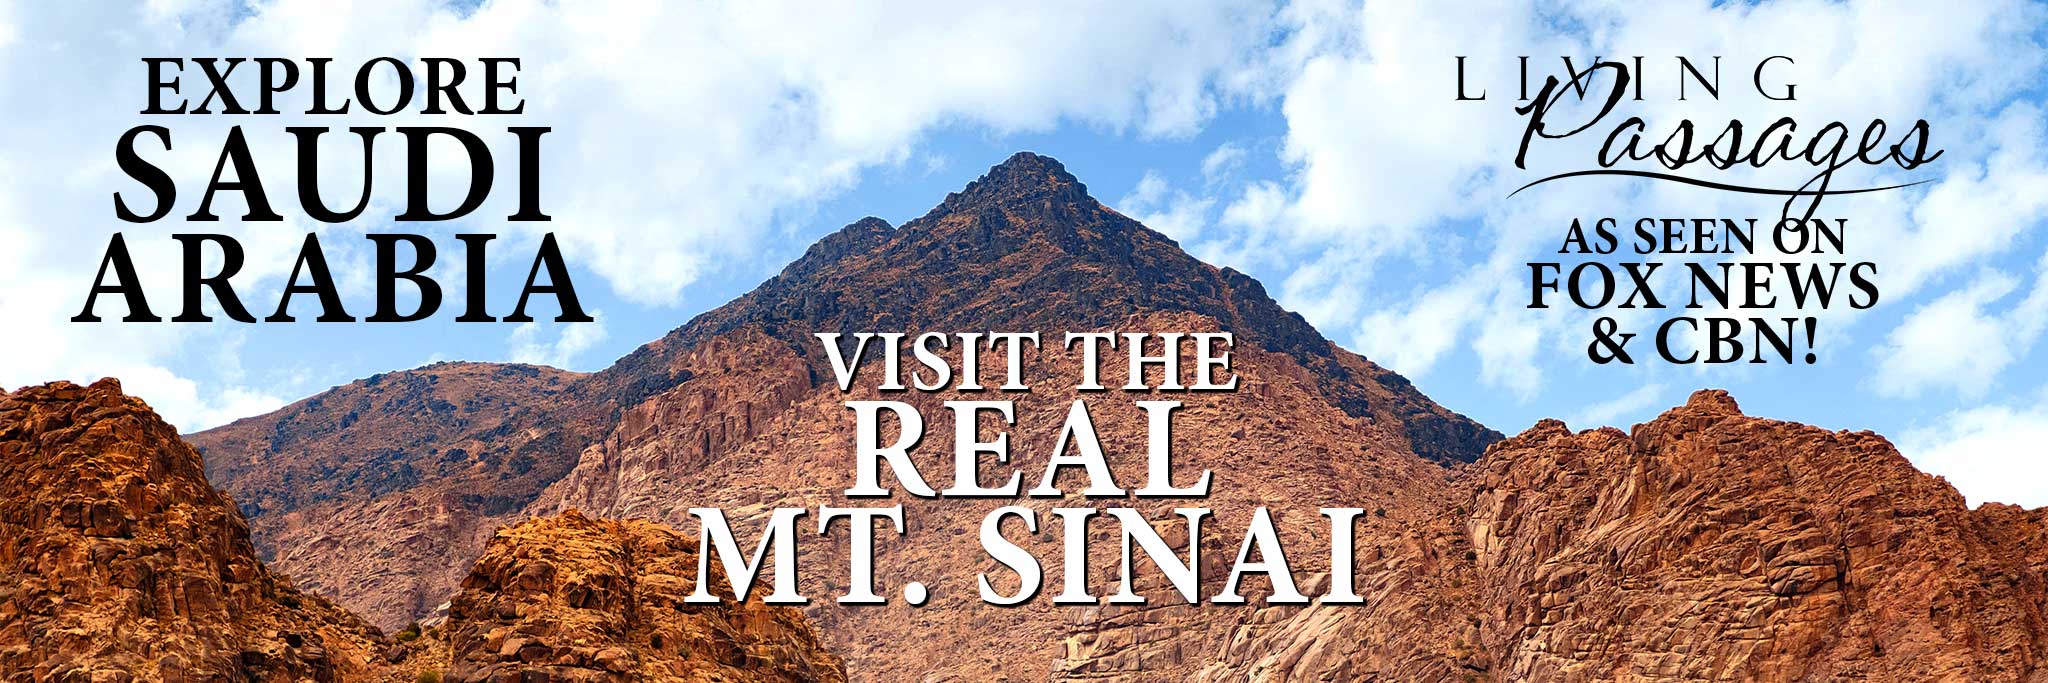 Visit the Real Mount Sinai in Saudi Arabia